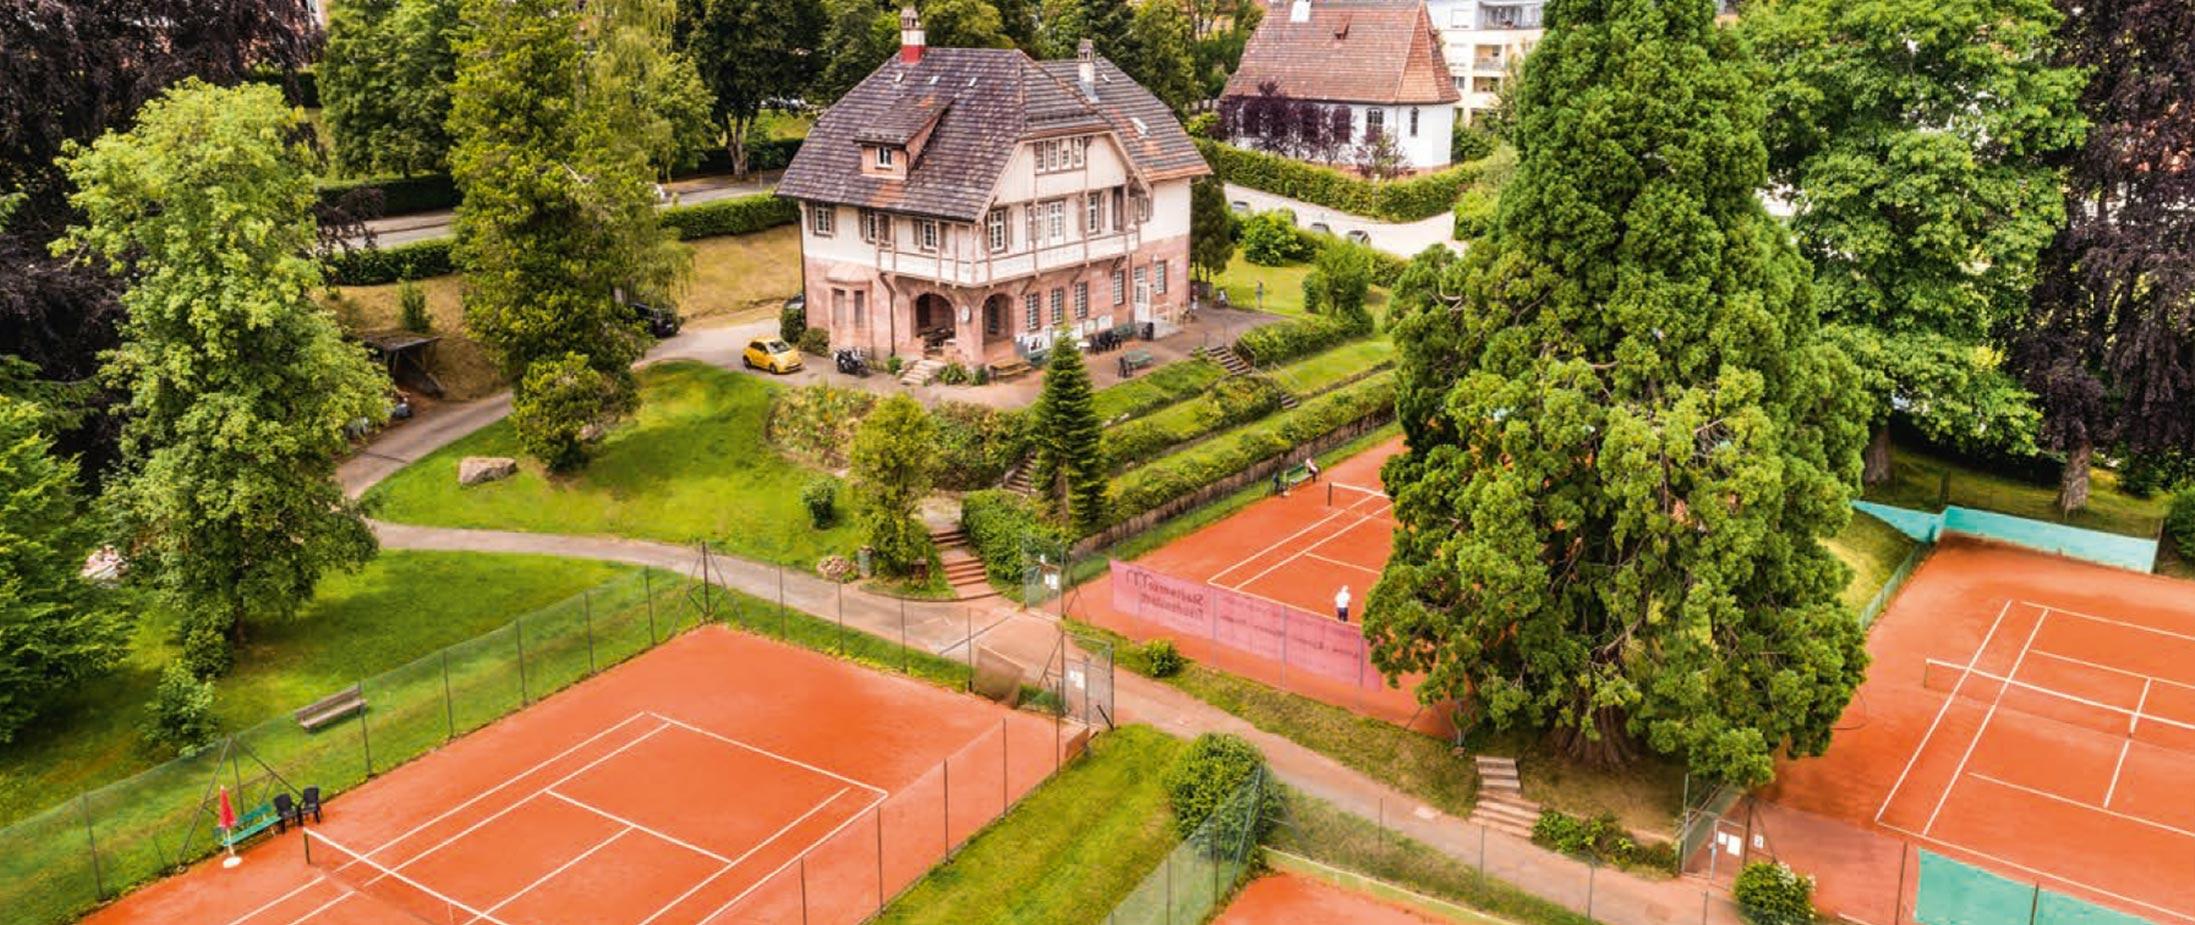 Spiele Tennis auf einer der schönsten Anlagen Süddeutschlands